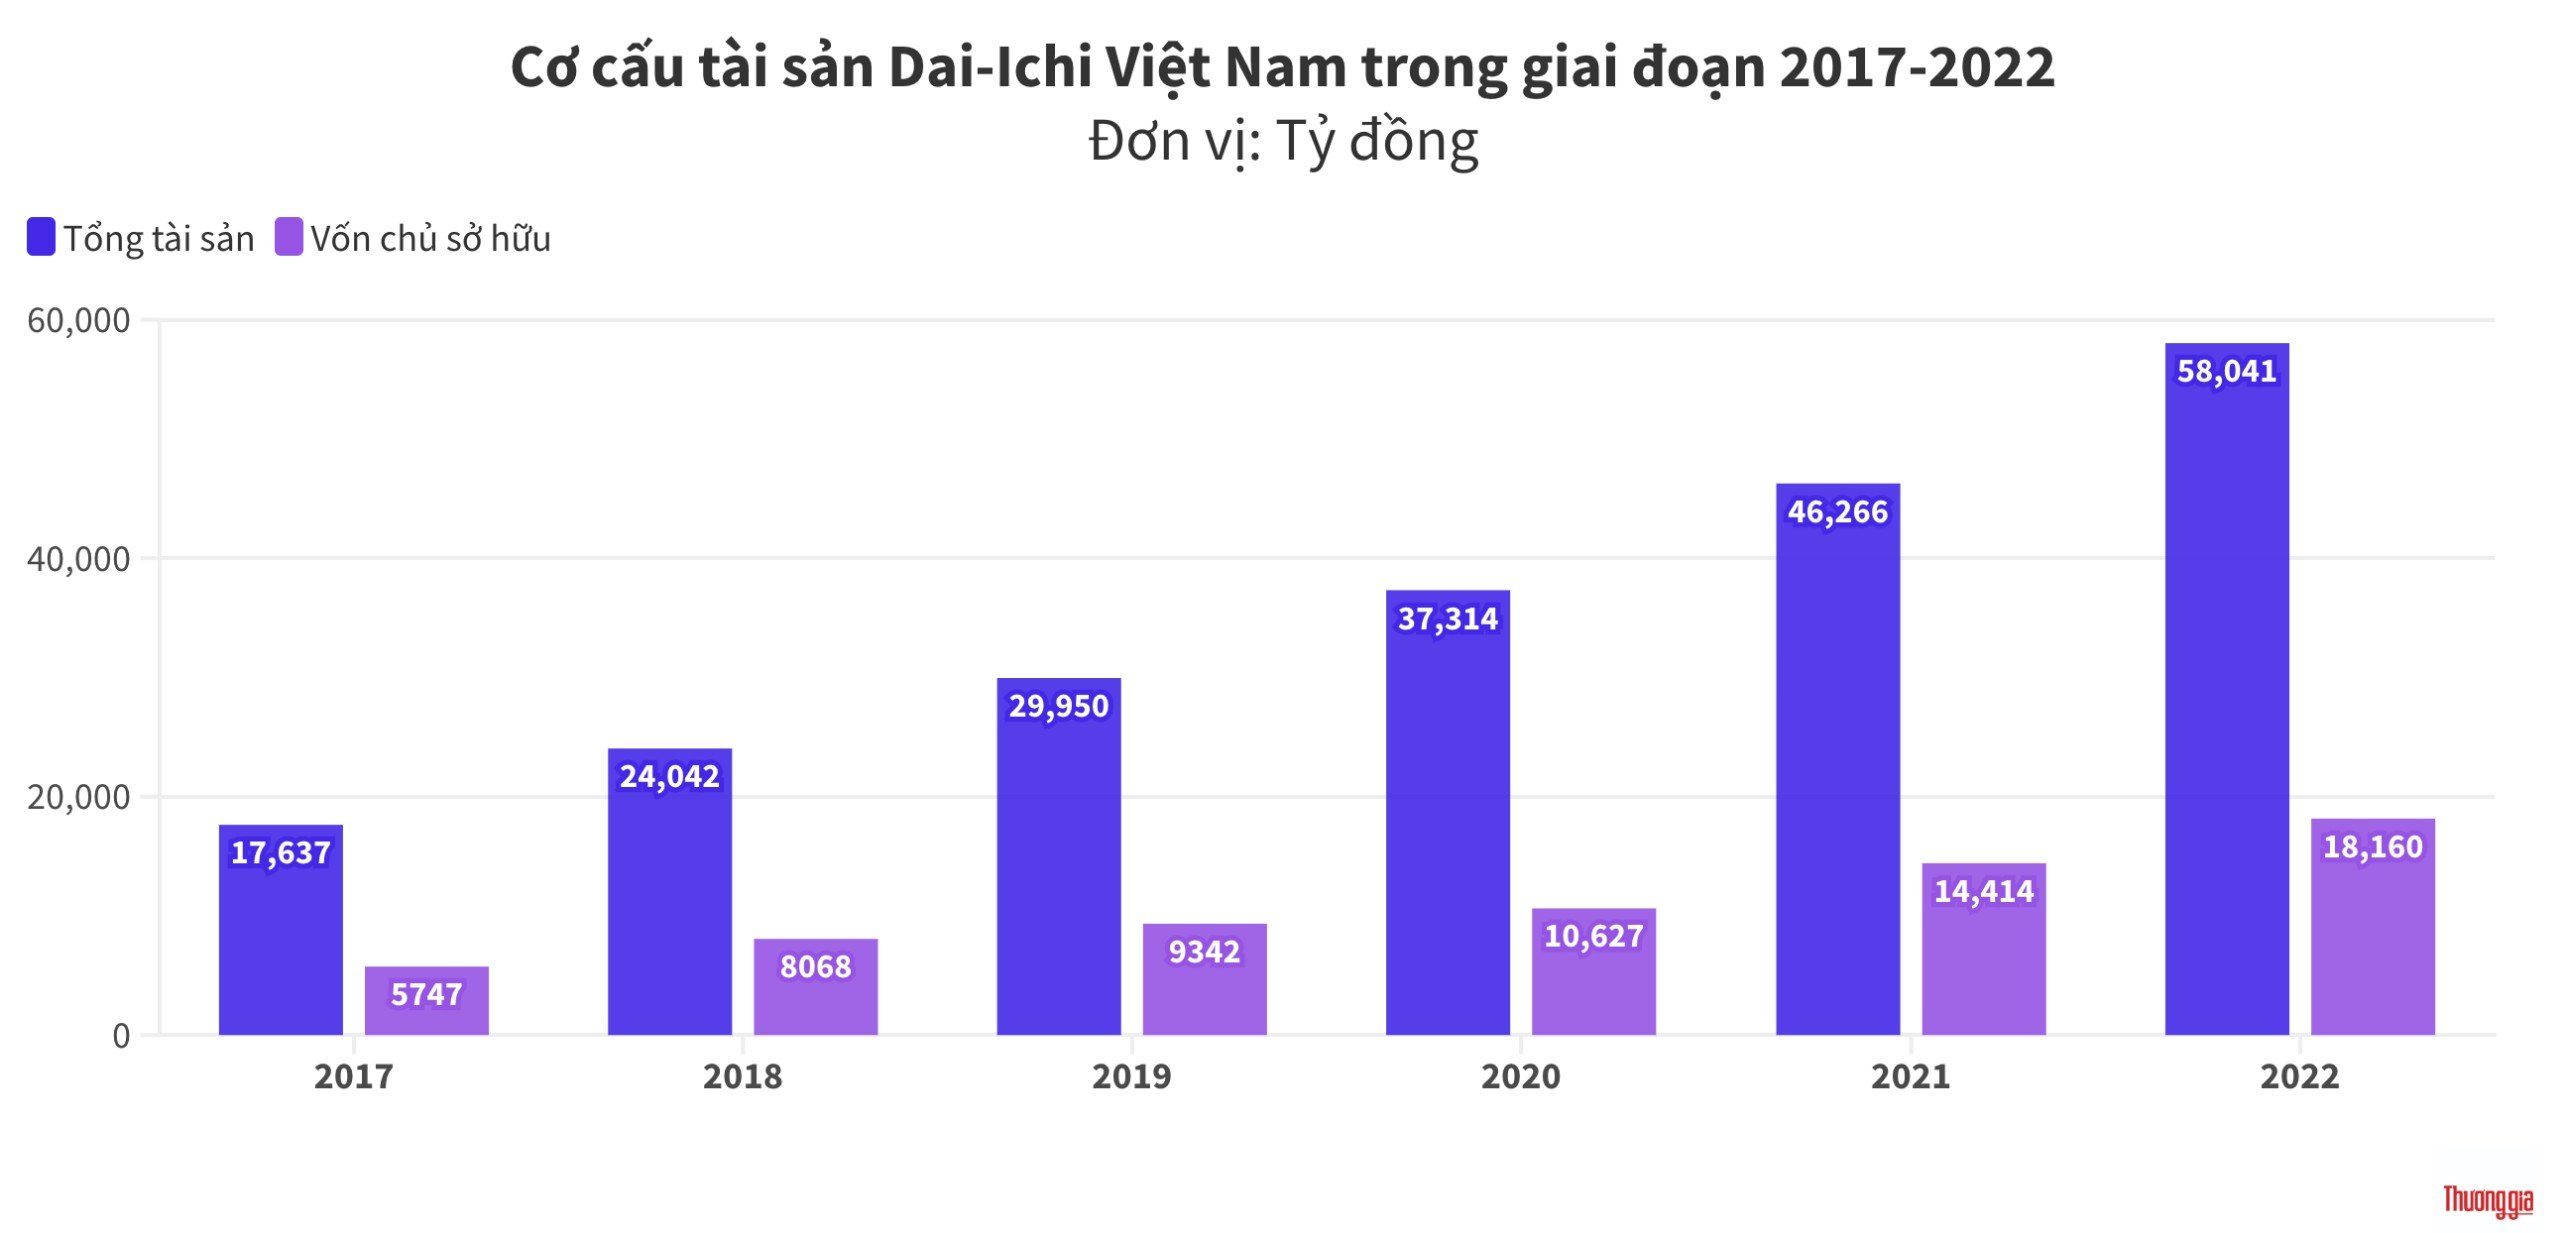  Soi tài chính của Dai-Ichi Việt Nam, công ty bảo hiểm vừa bị thanh tra  3